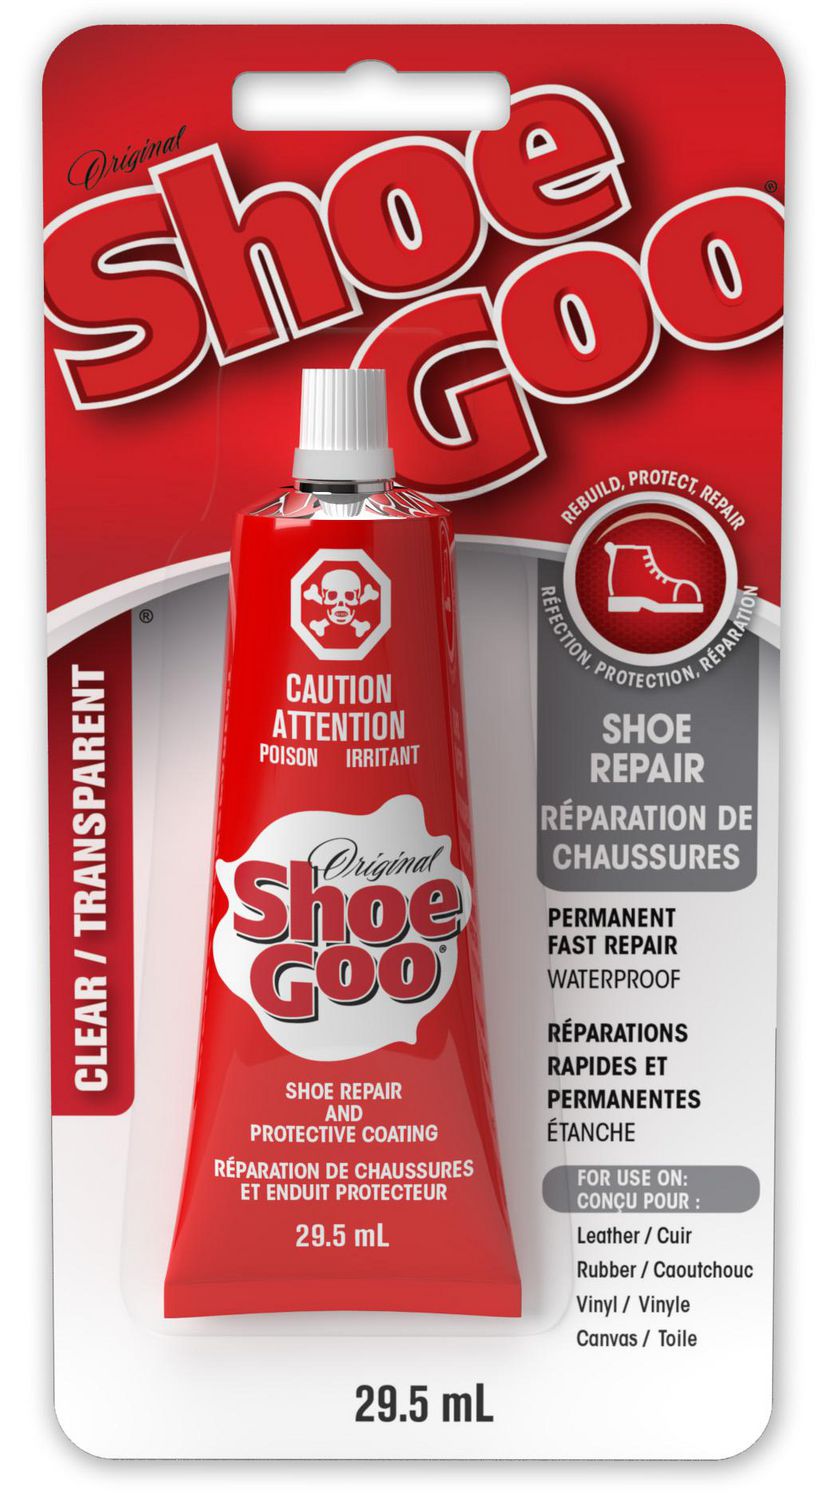 shoe goo website